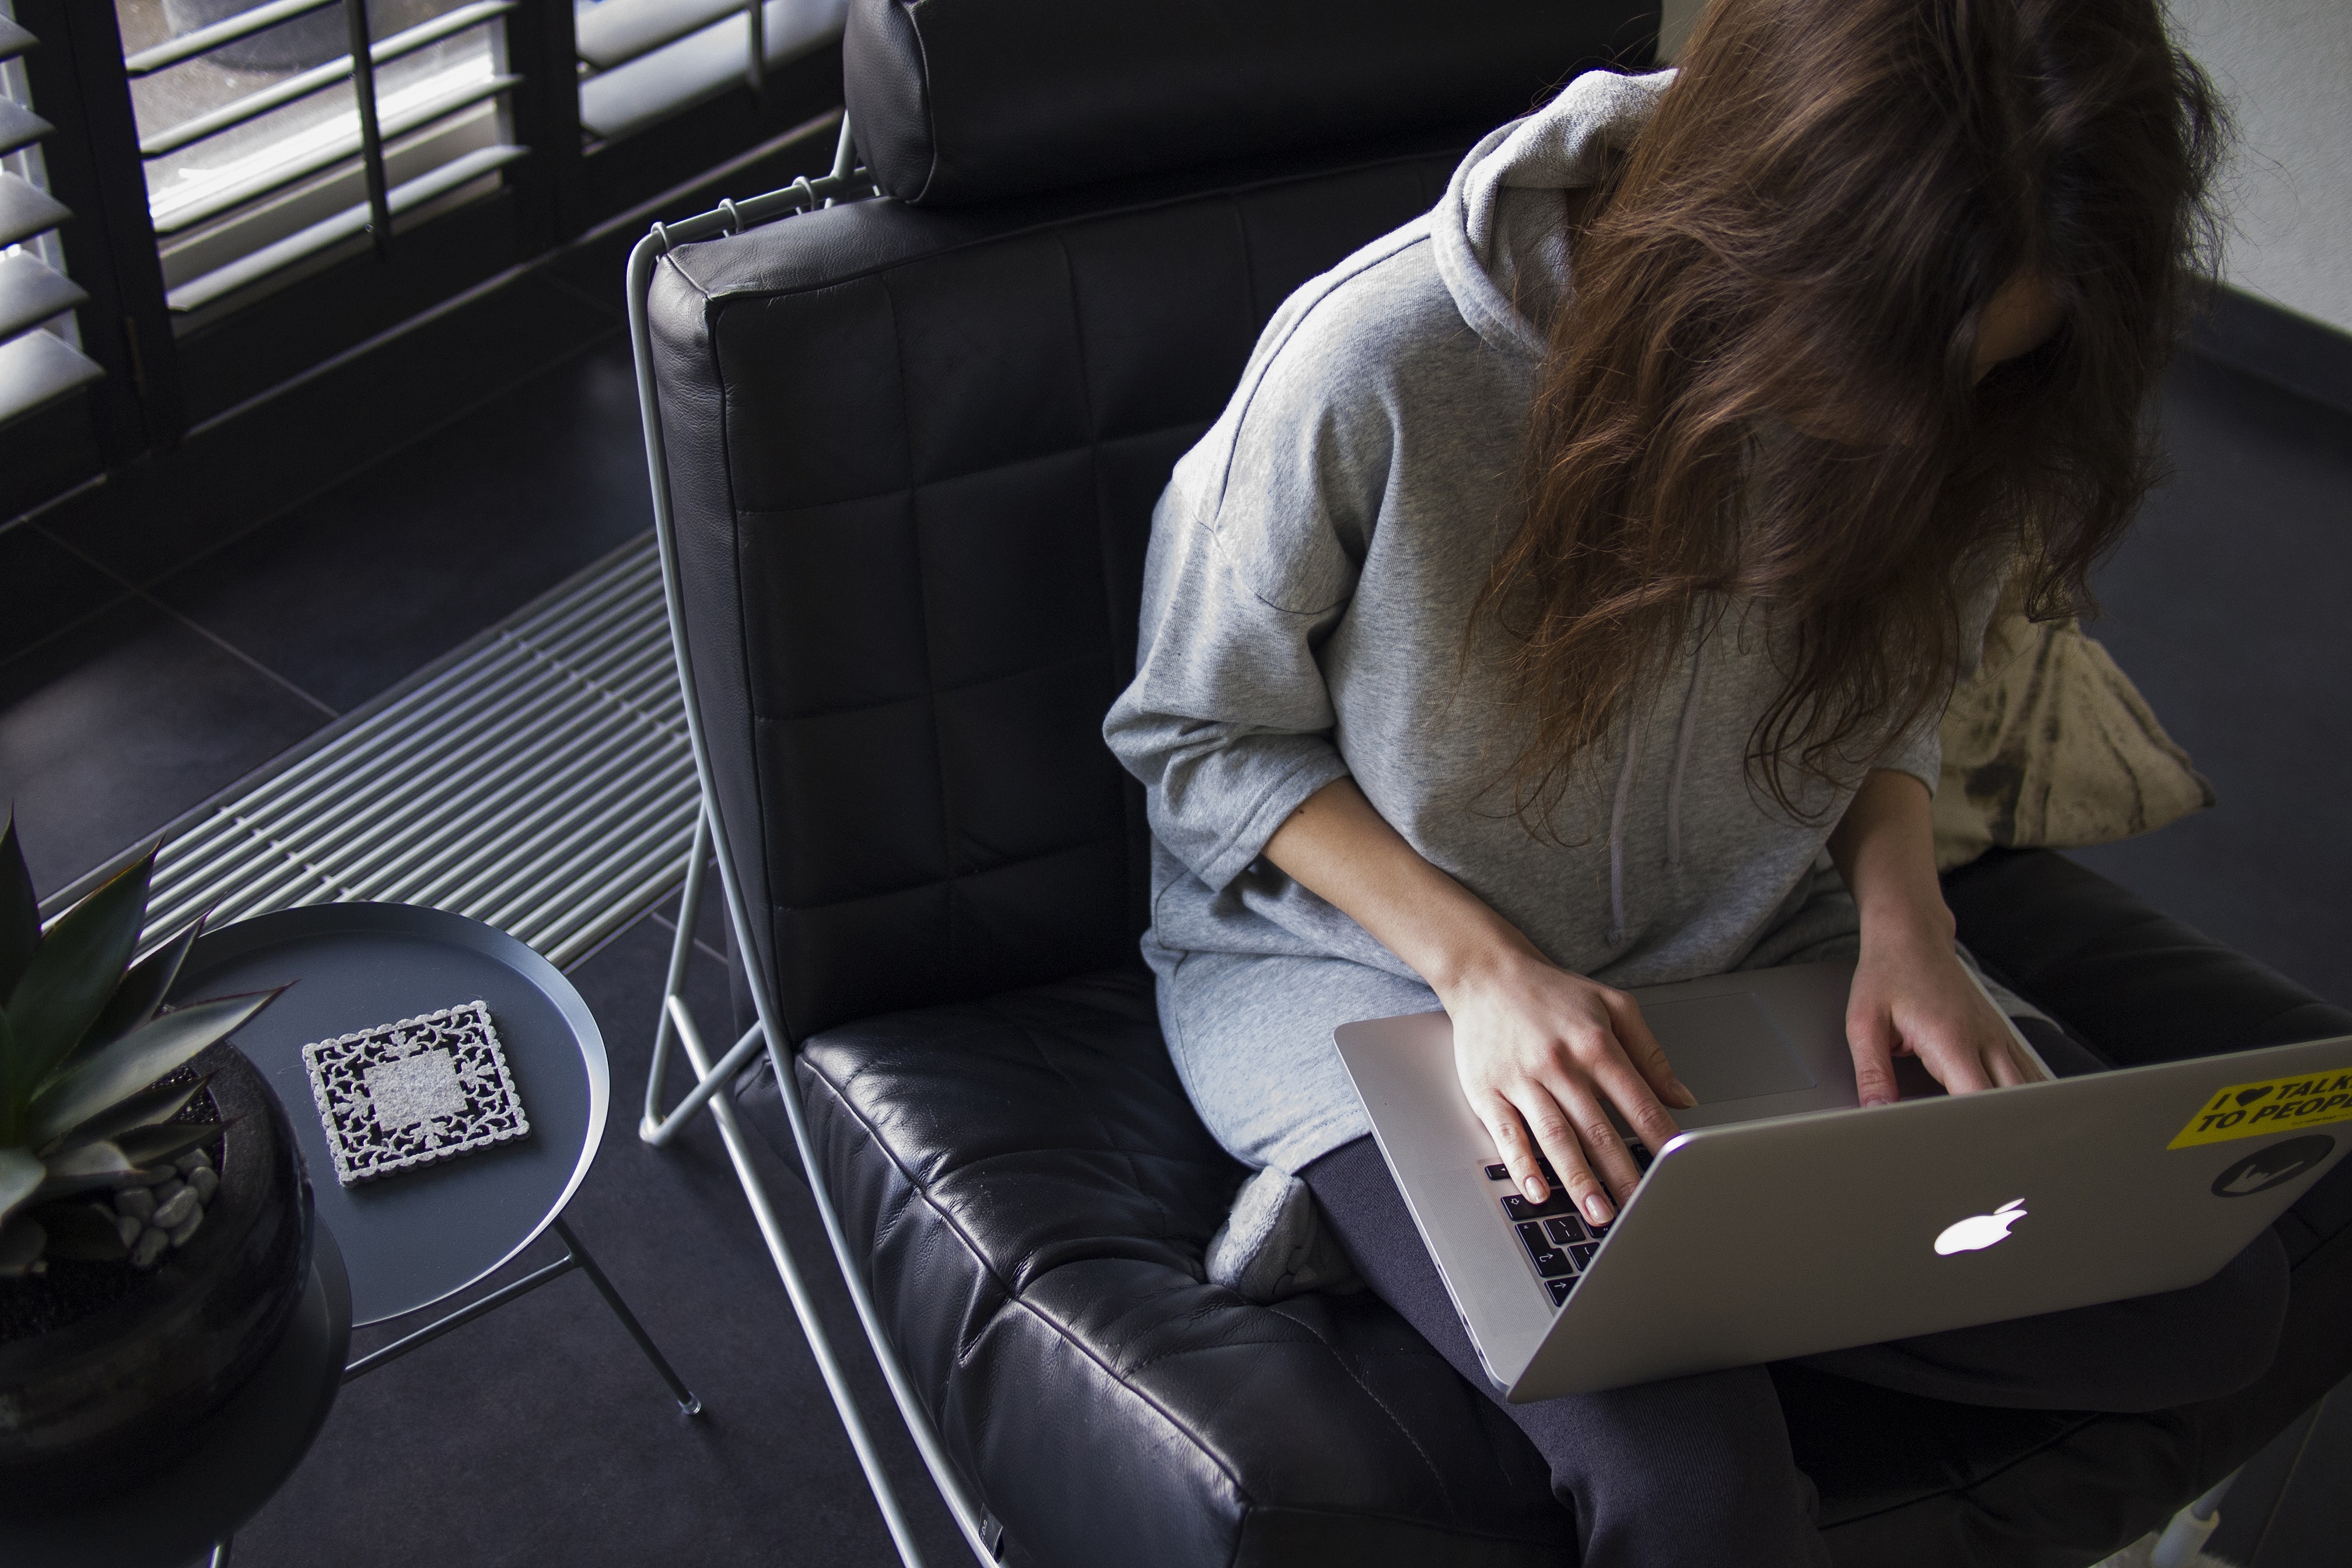 uma mulher, sentada em uma poltrona com um macbook no colo, suas mãos sobre as teclas